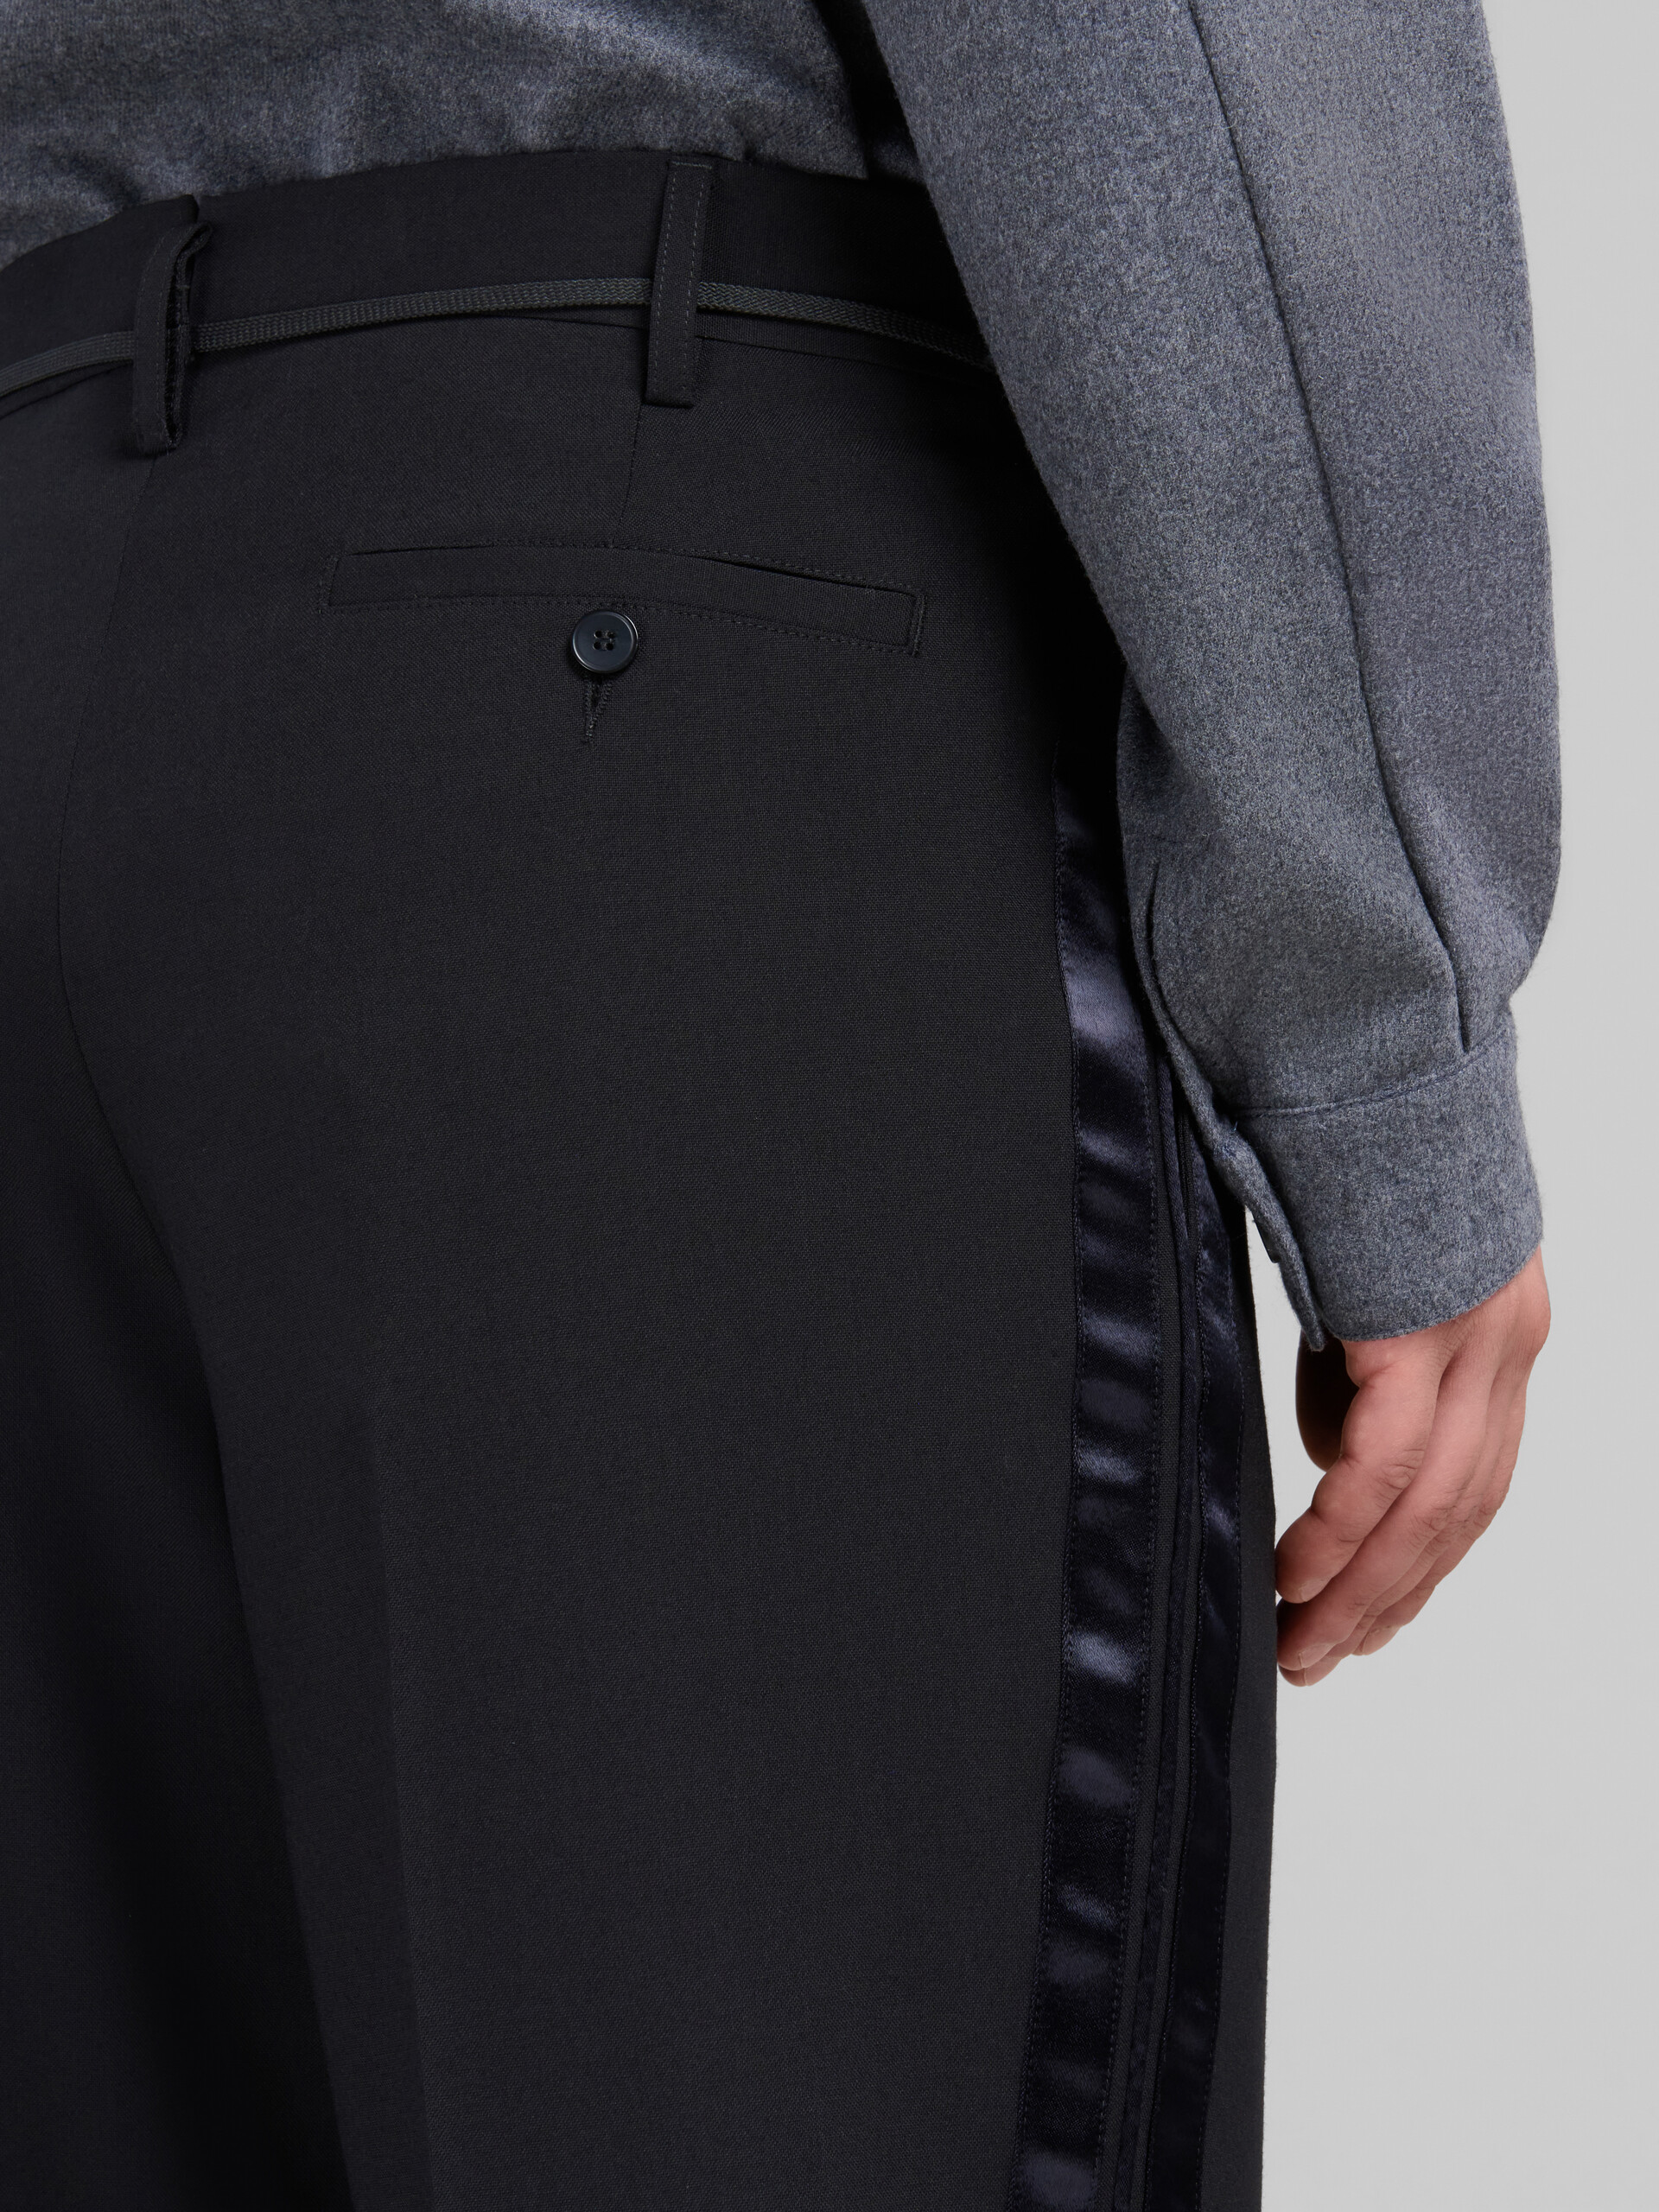 Pantaloni neri in lana con bande in raso - Pantaloni - Image 4